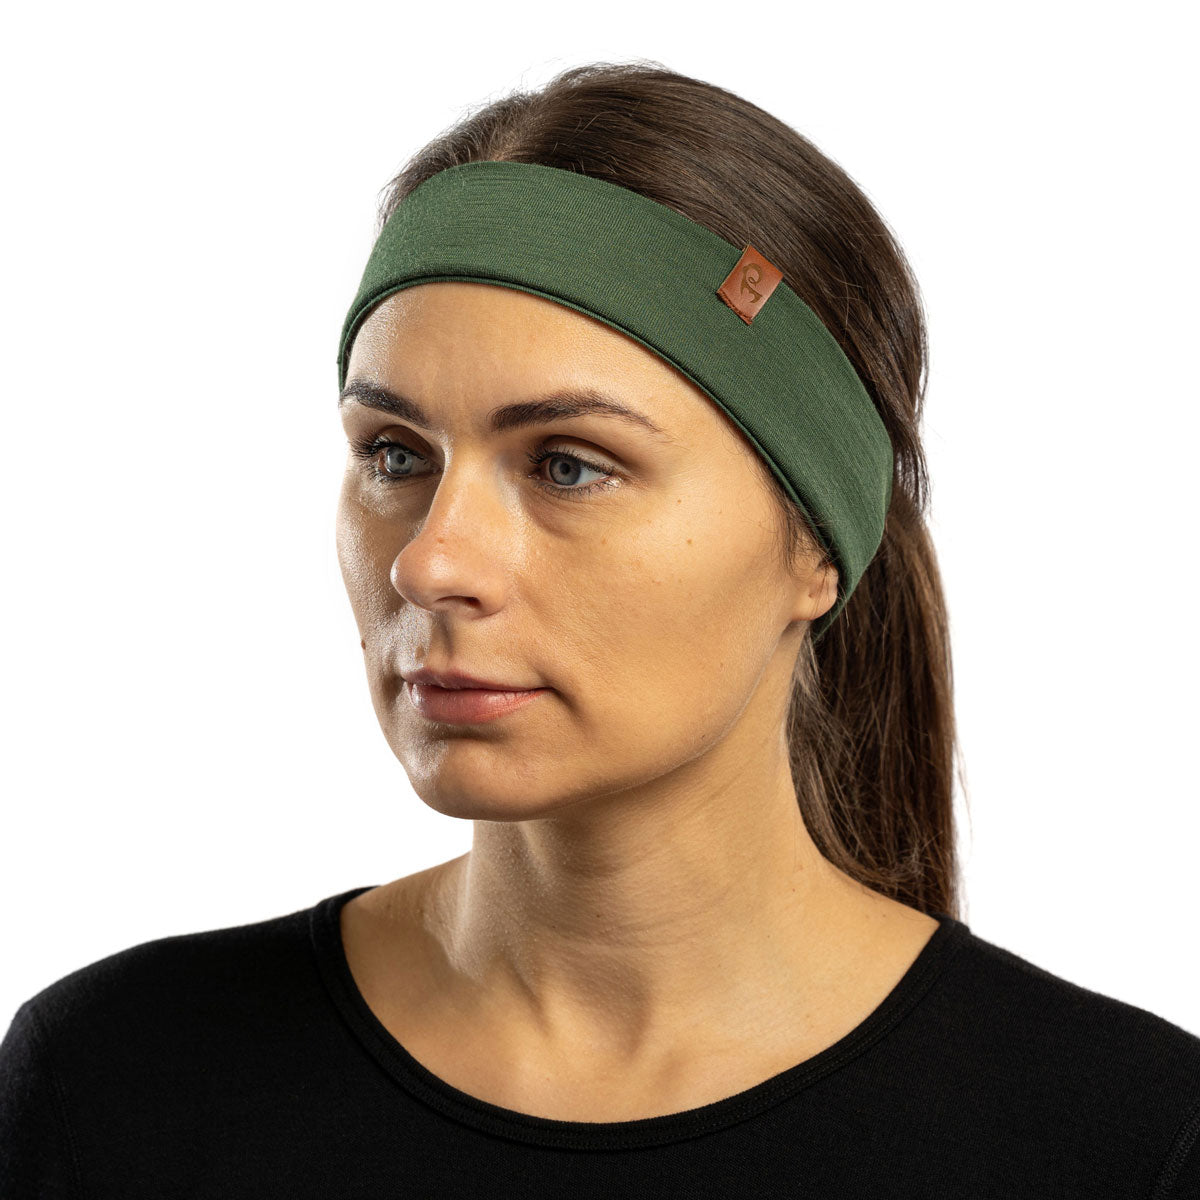 MENIQUE 100% Merino Wool Womens Headband Dark Green